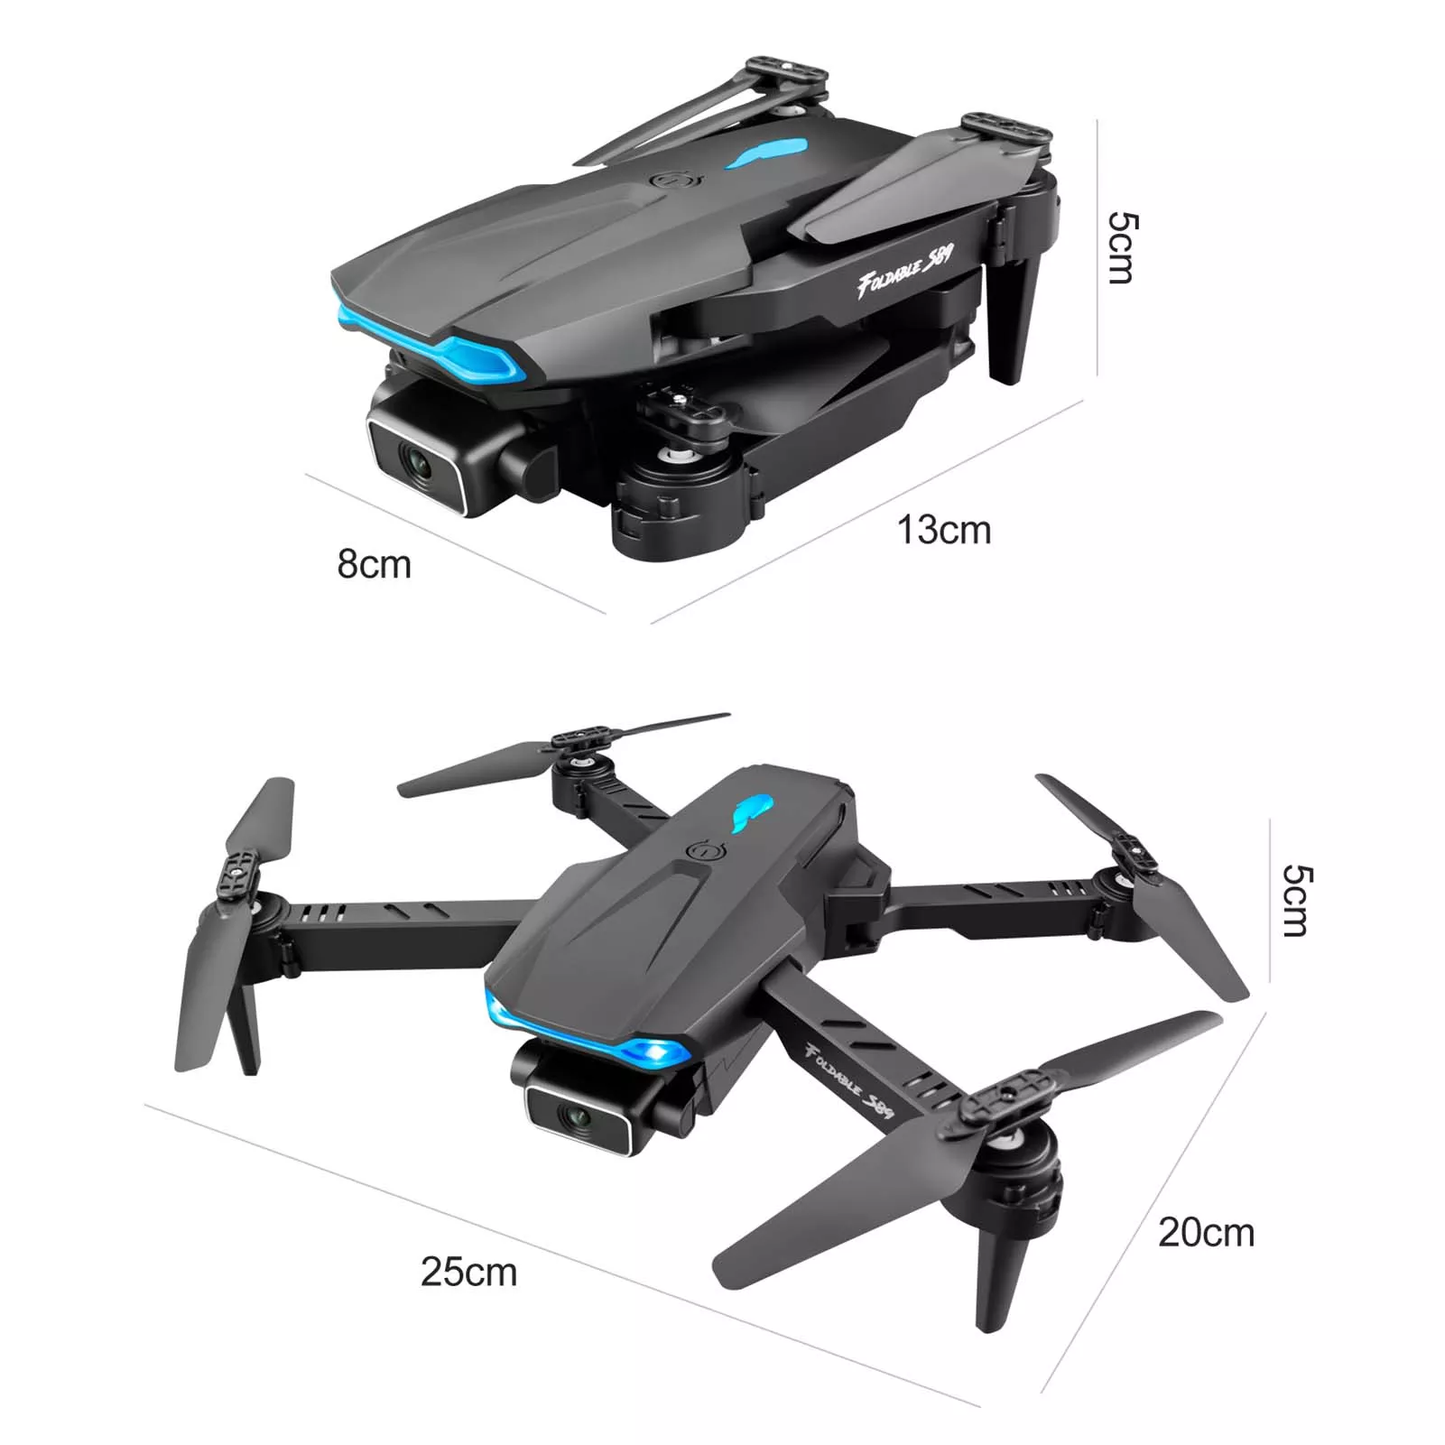 Zumo Drone S89 - 4K HD Drone